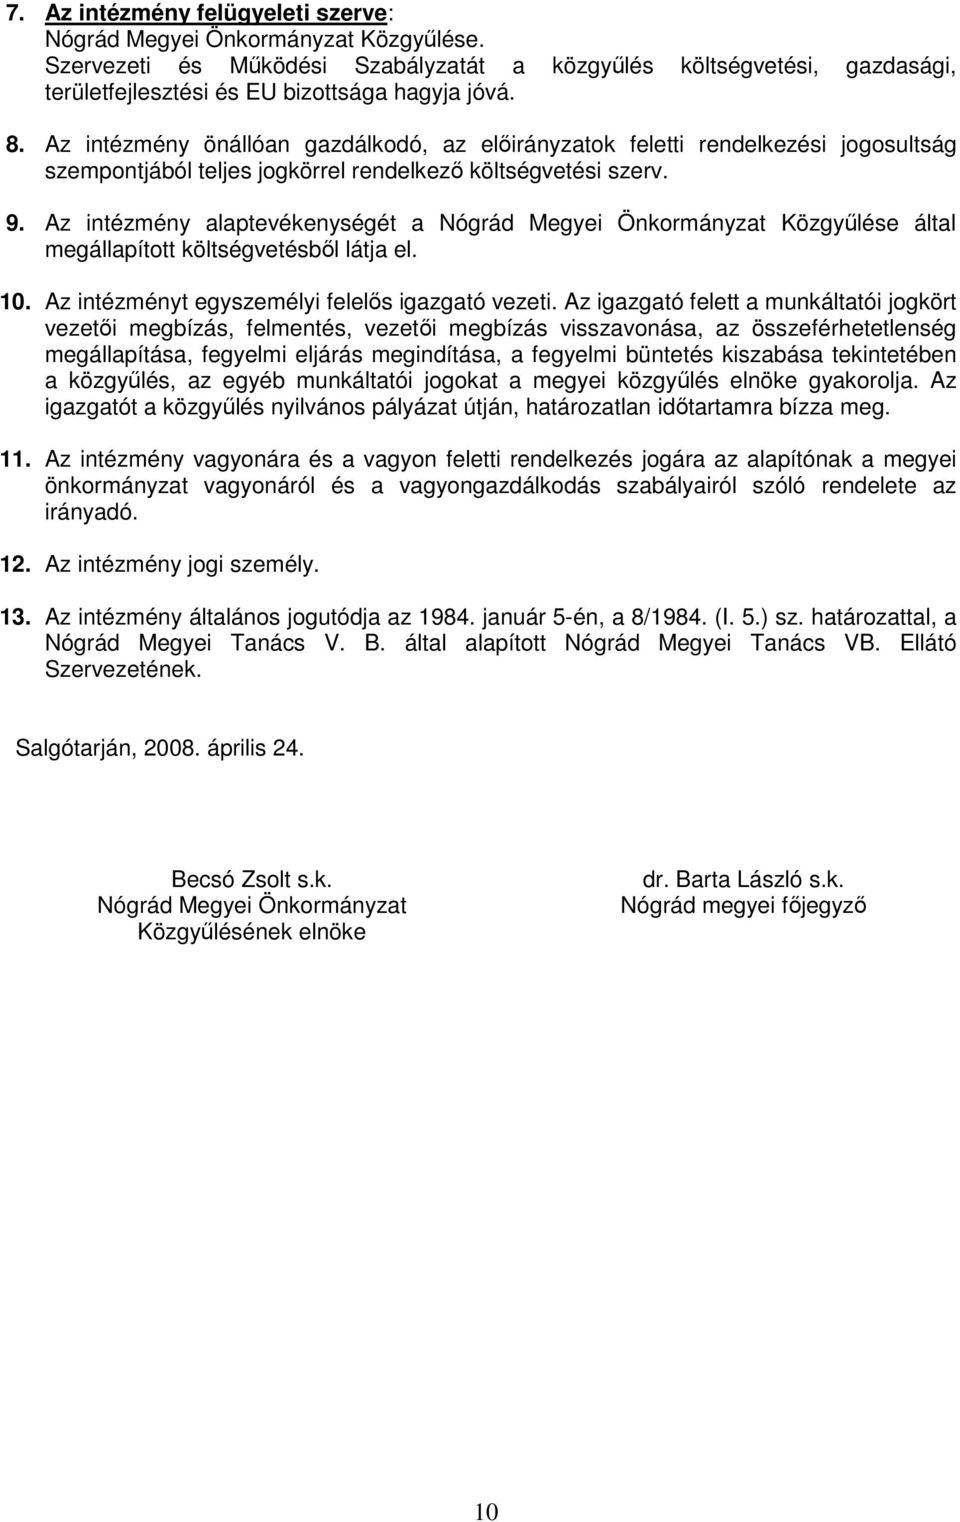 Az intézmény alaptevékenységét a Nógrád Megyei Önkormányzat Közgyőlése által megállapított költségvetésbıl látja el. 10. Az intézményt egyszemélyi felelıs igazgató vezeti.